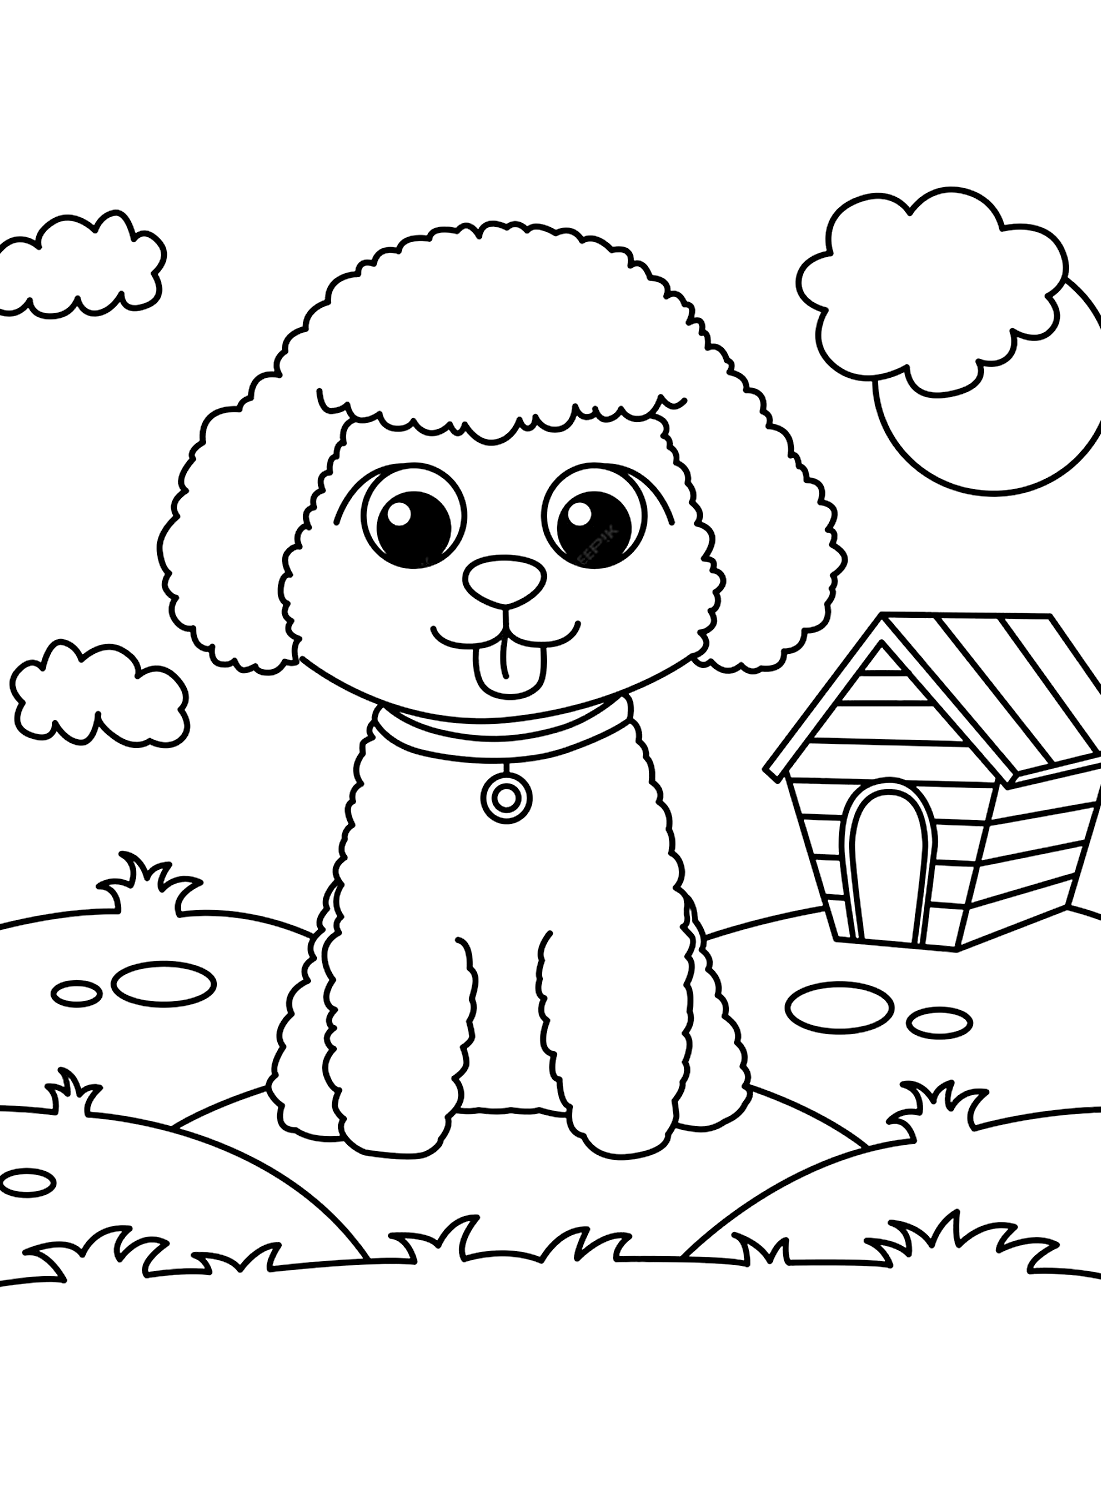 Página de cachorrinho fofo de desenho animado